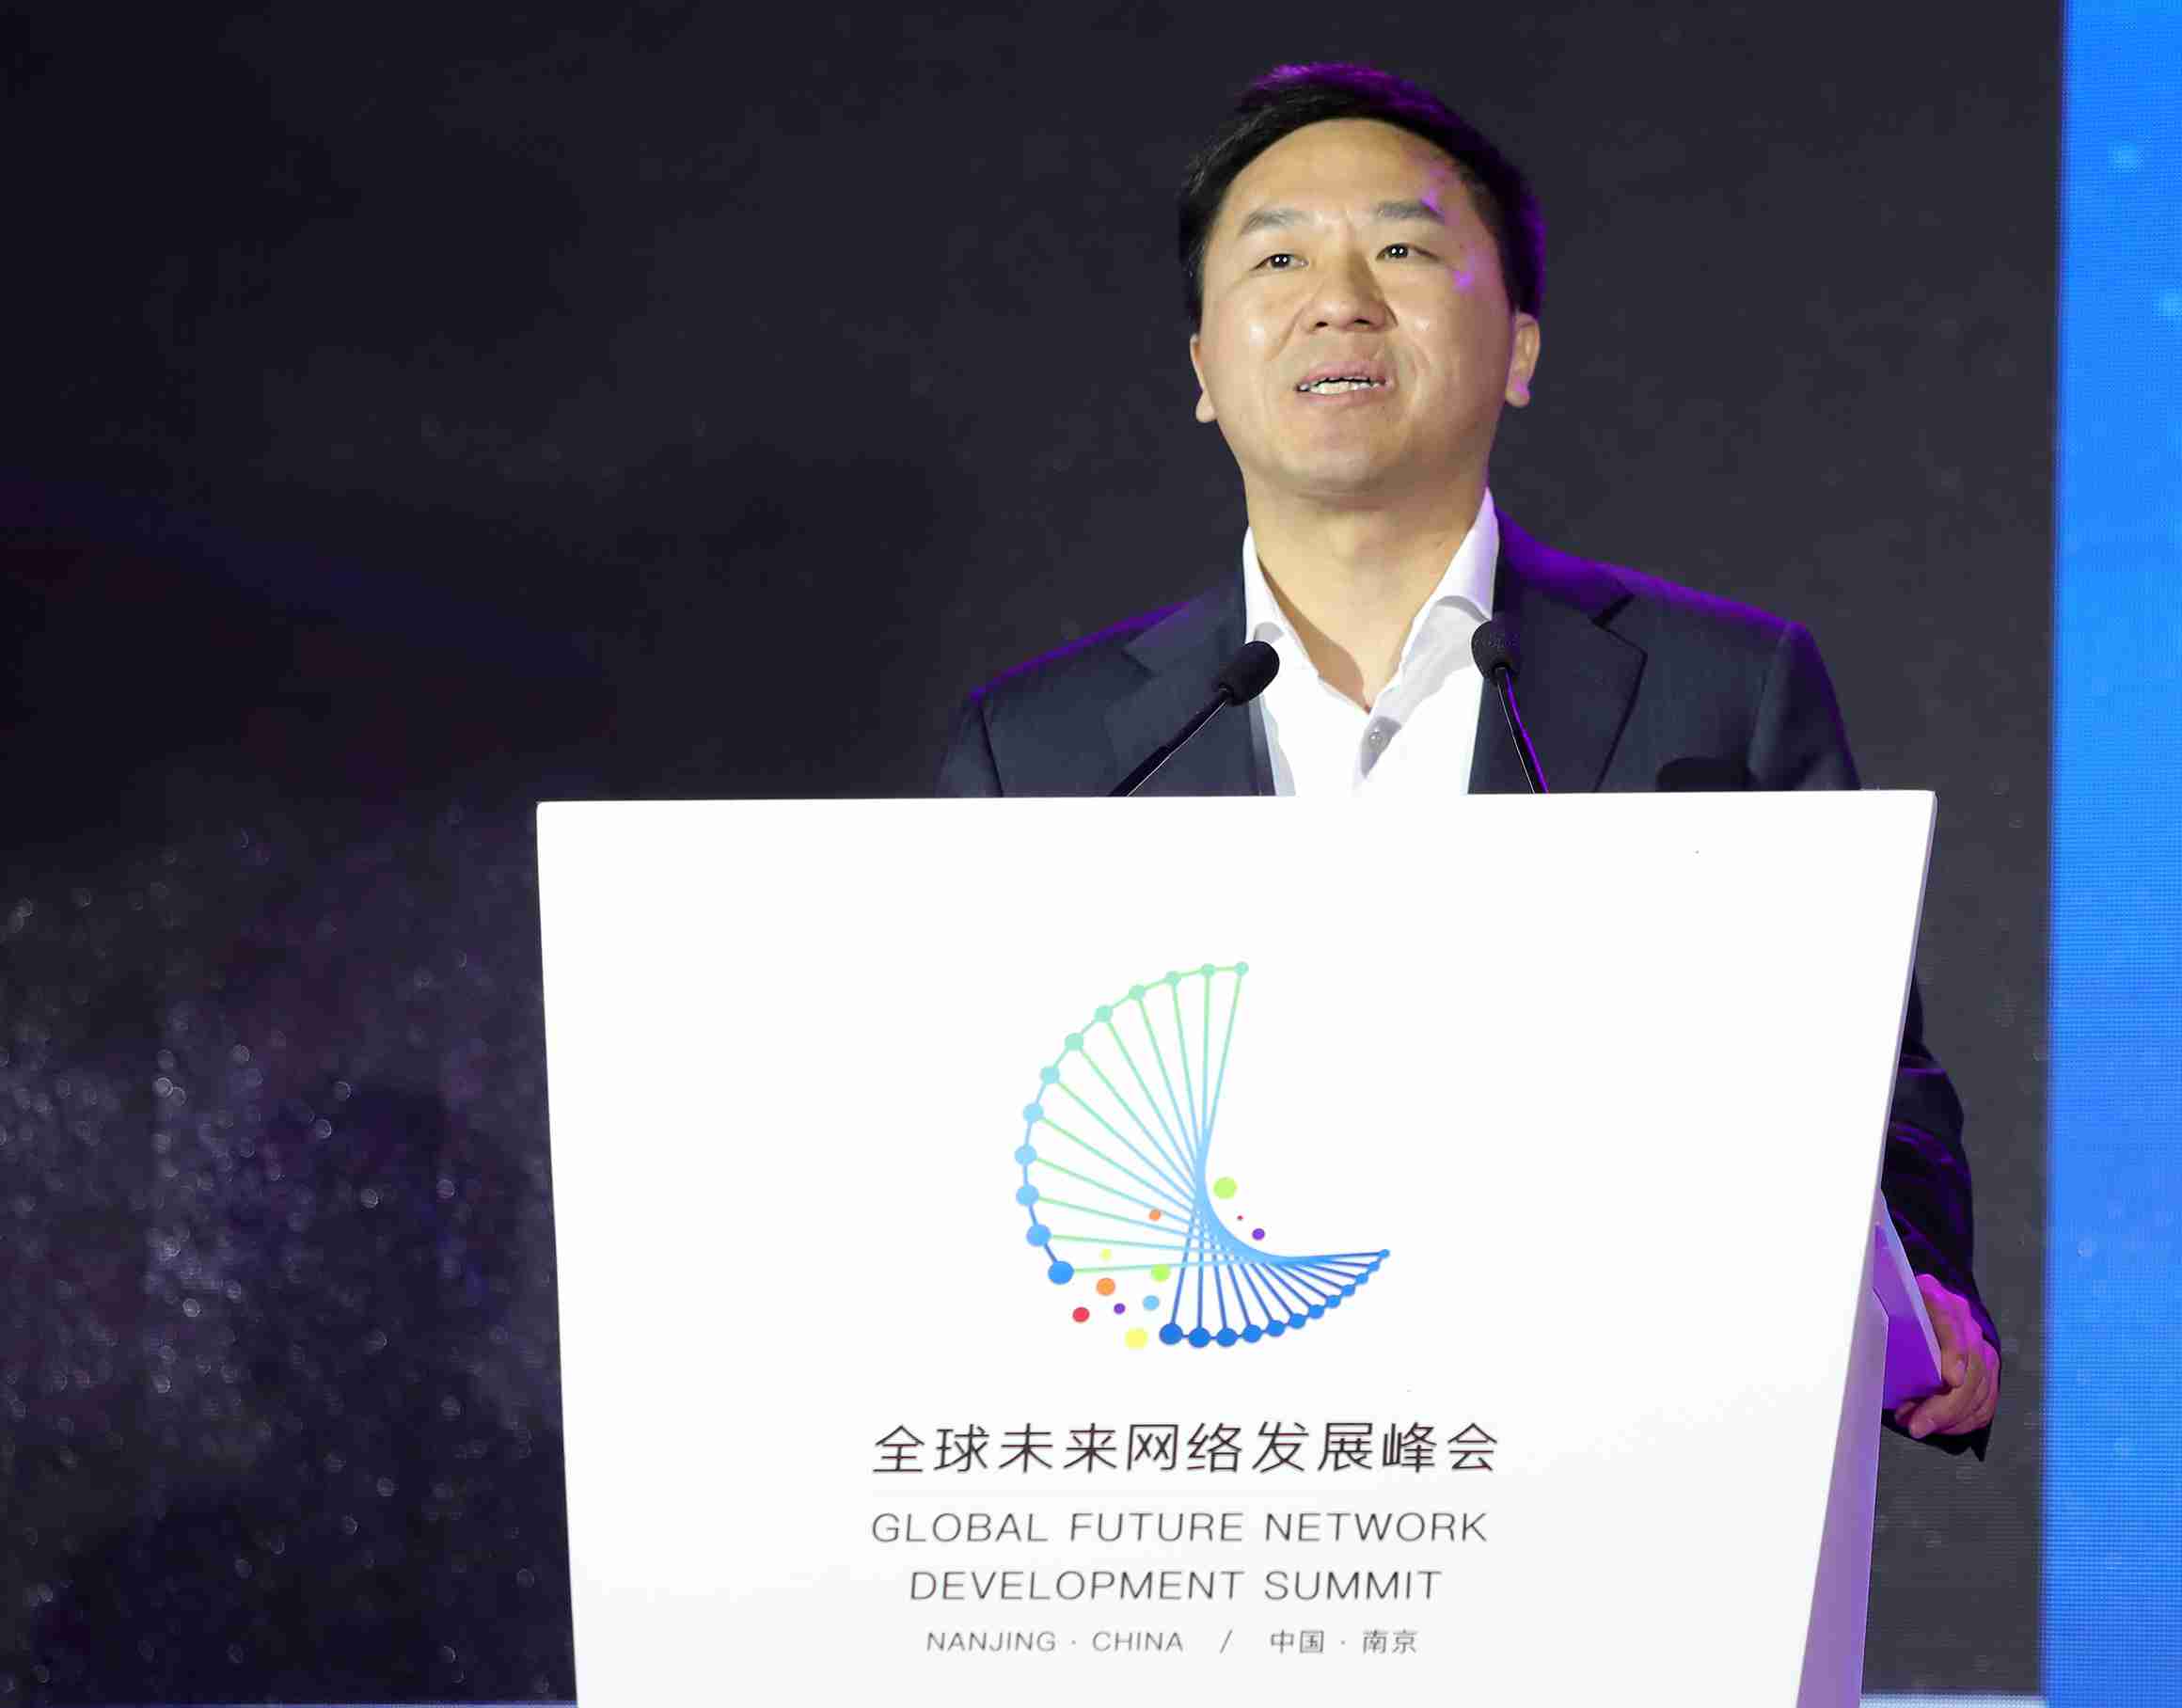 中國電信副總裁劉桂清：構建智能雲網 建設網絡強國